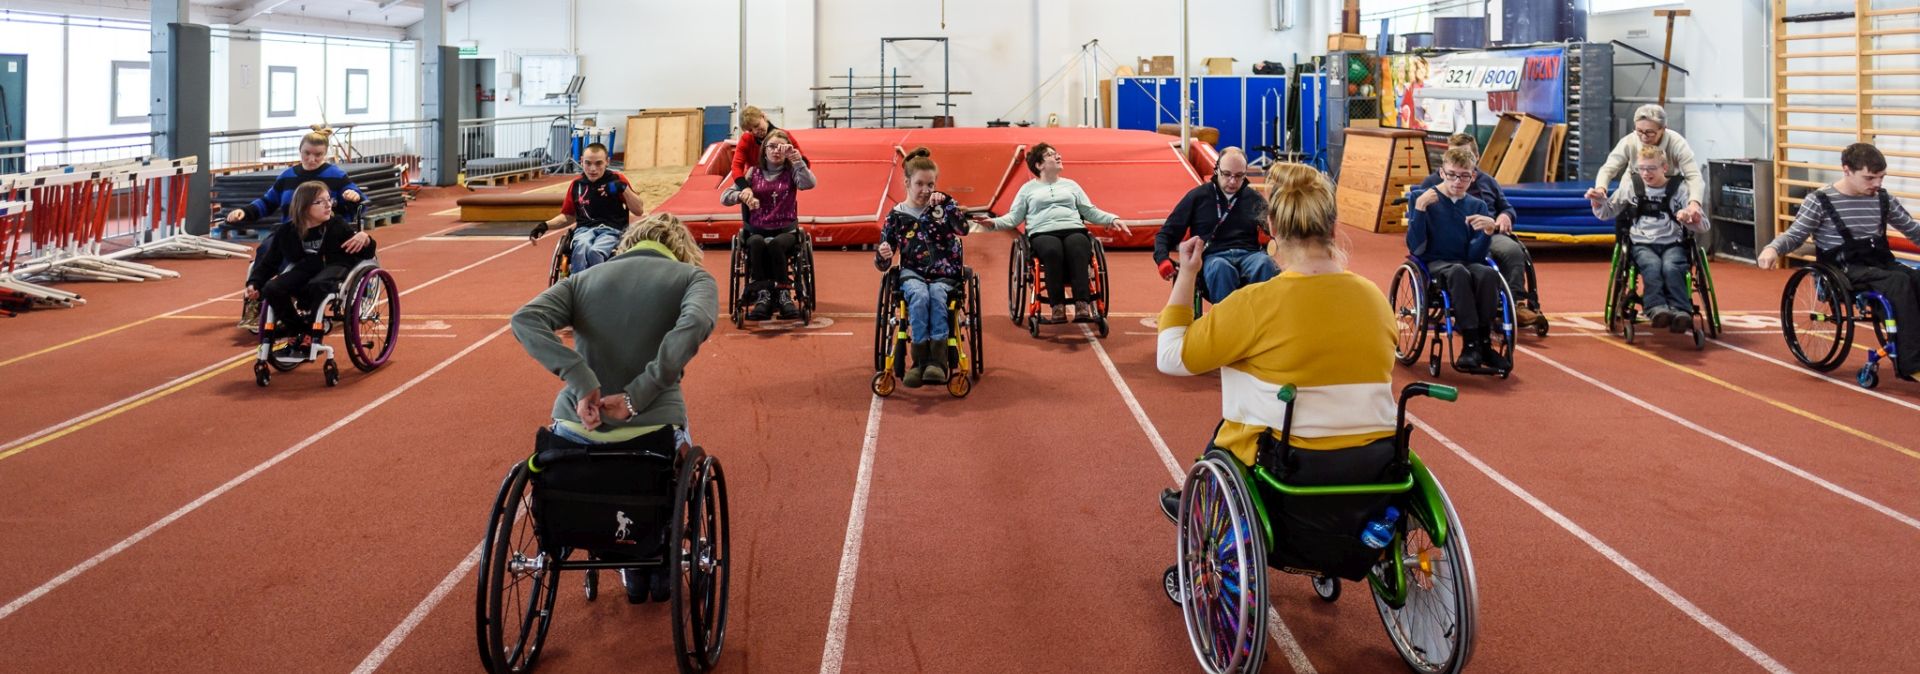 Zajęcia dla osób z niepełnosprawnością ruchową w ramach Gdyńskiego Poruszenia 